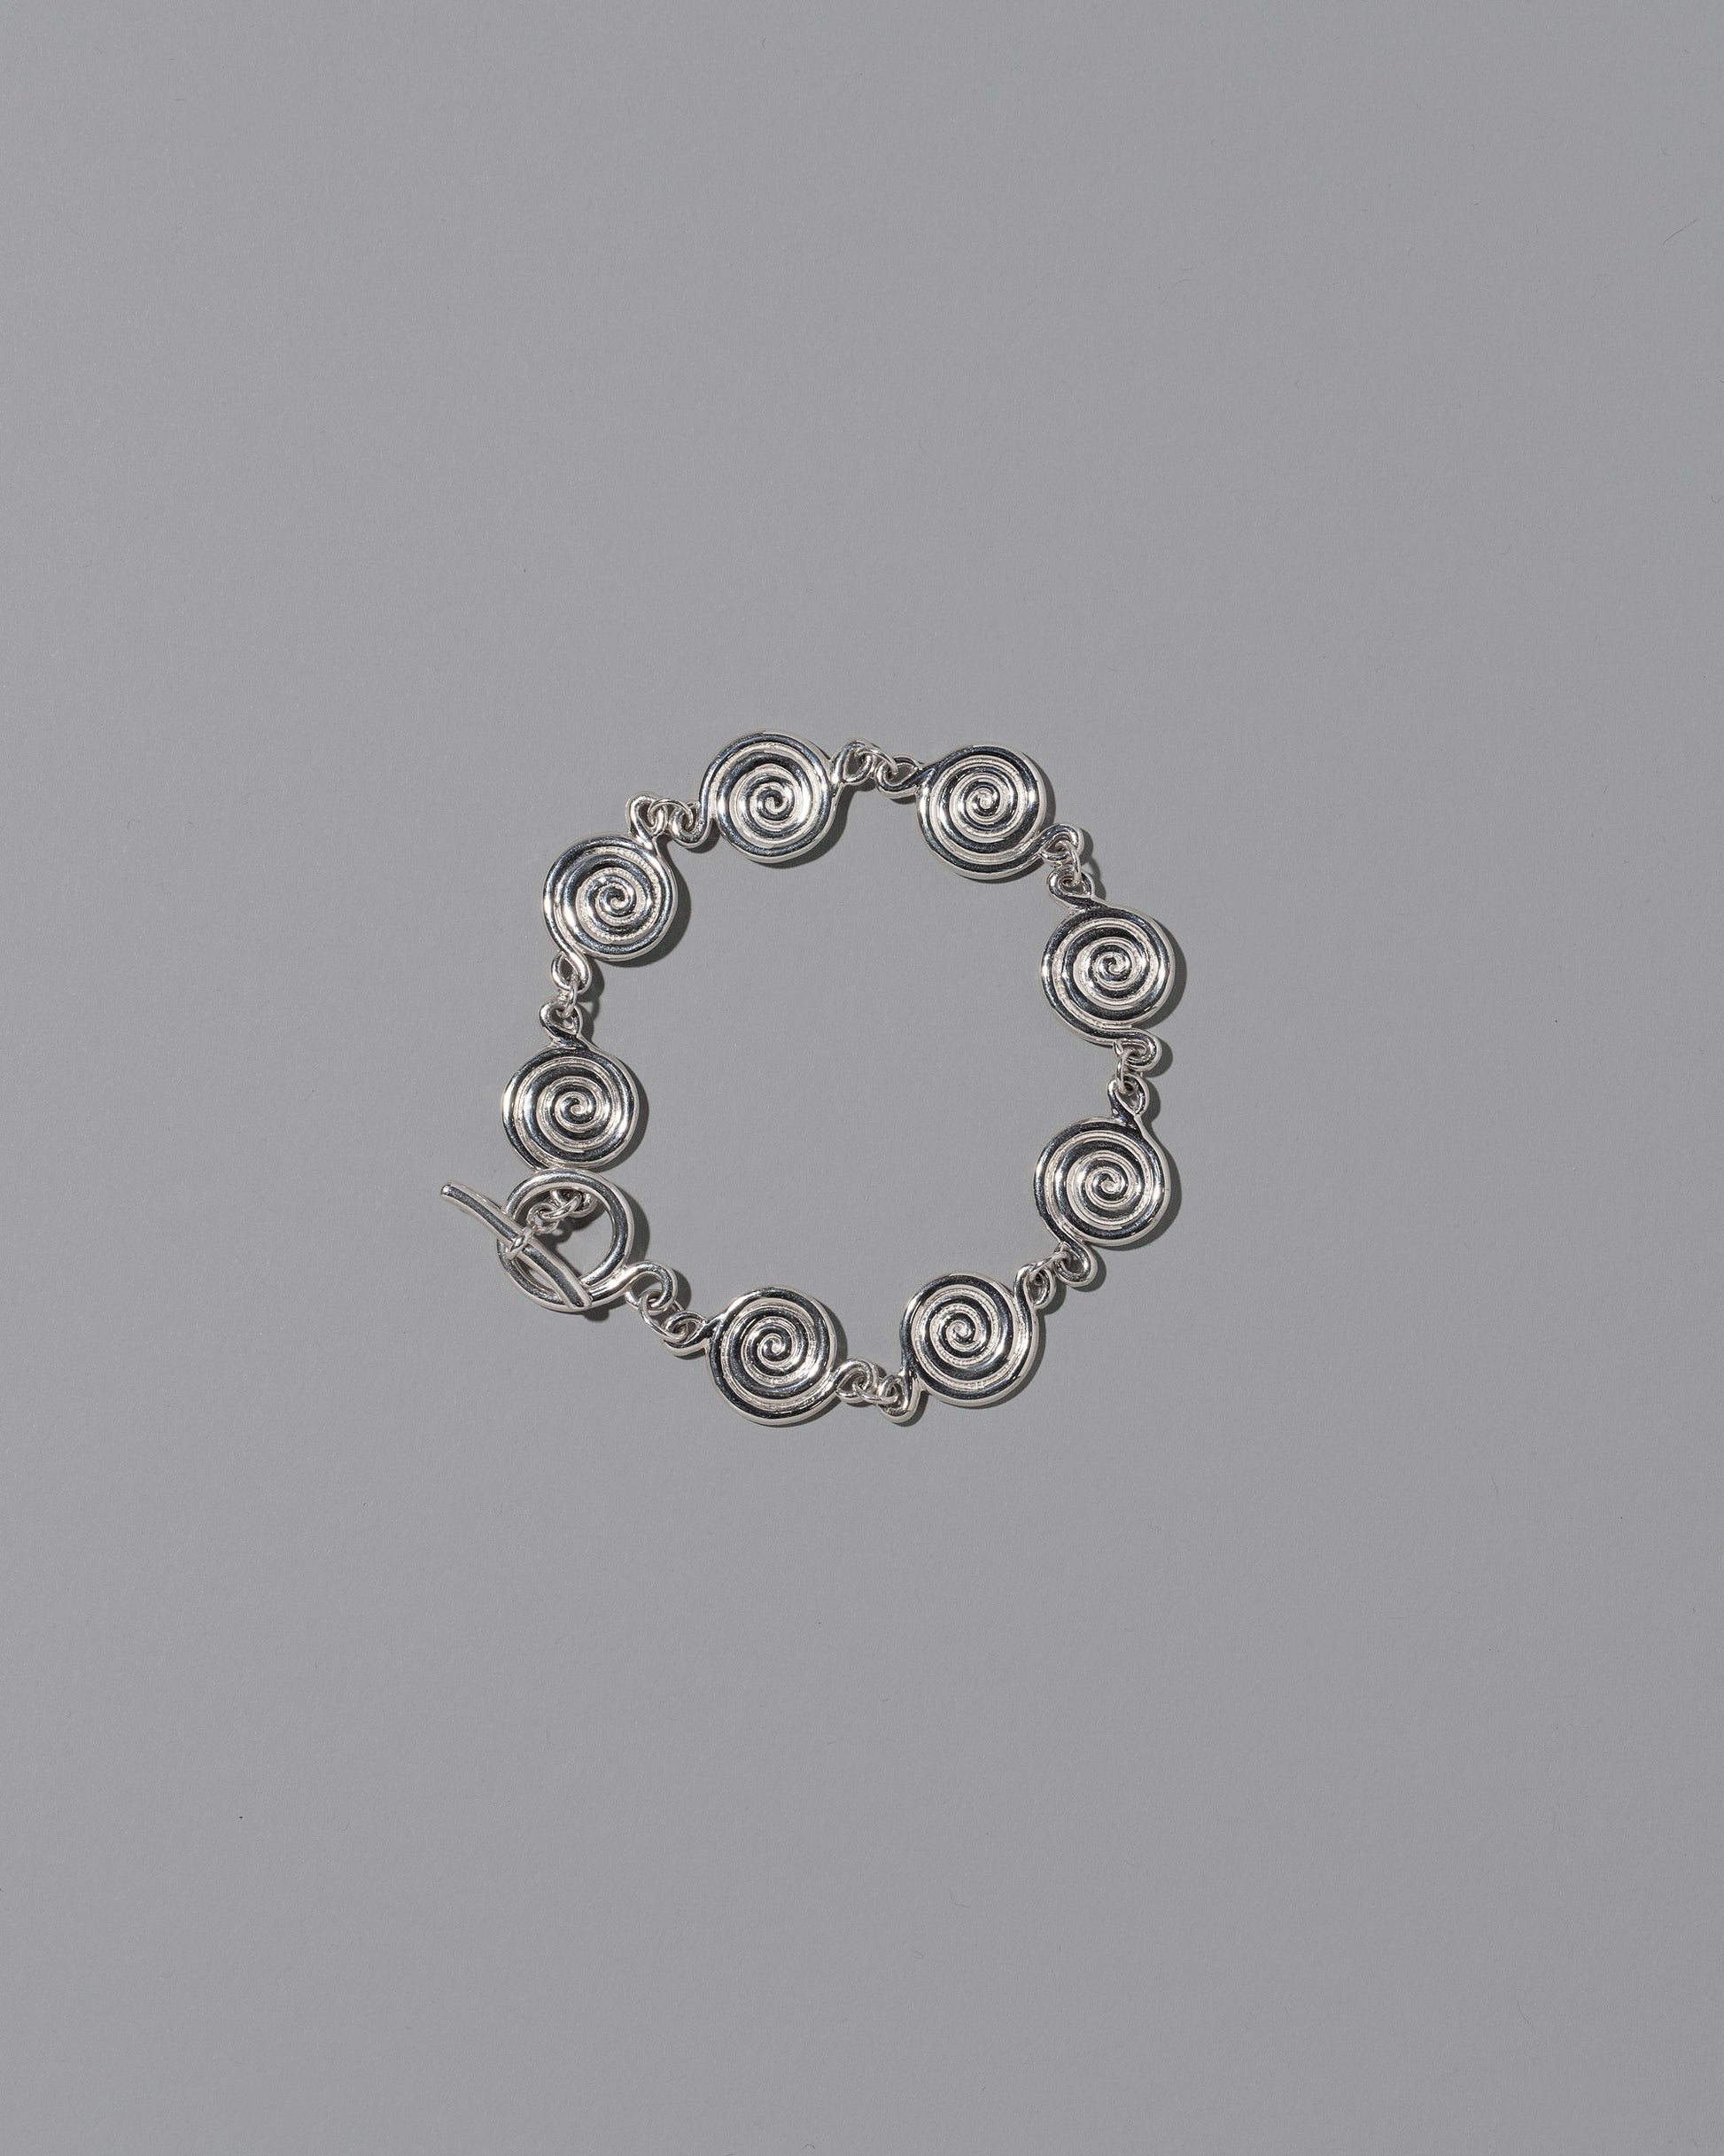 CRZM Sterling Silver Serpentinite Bracelet on light color background.